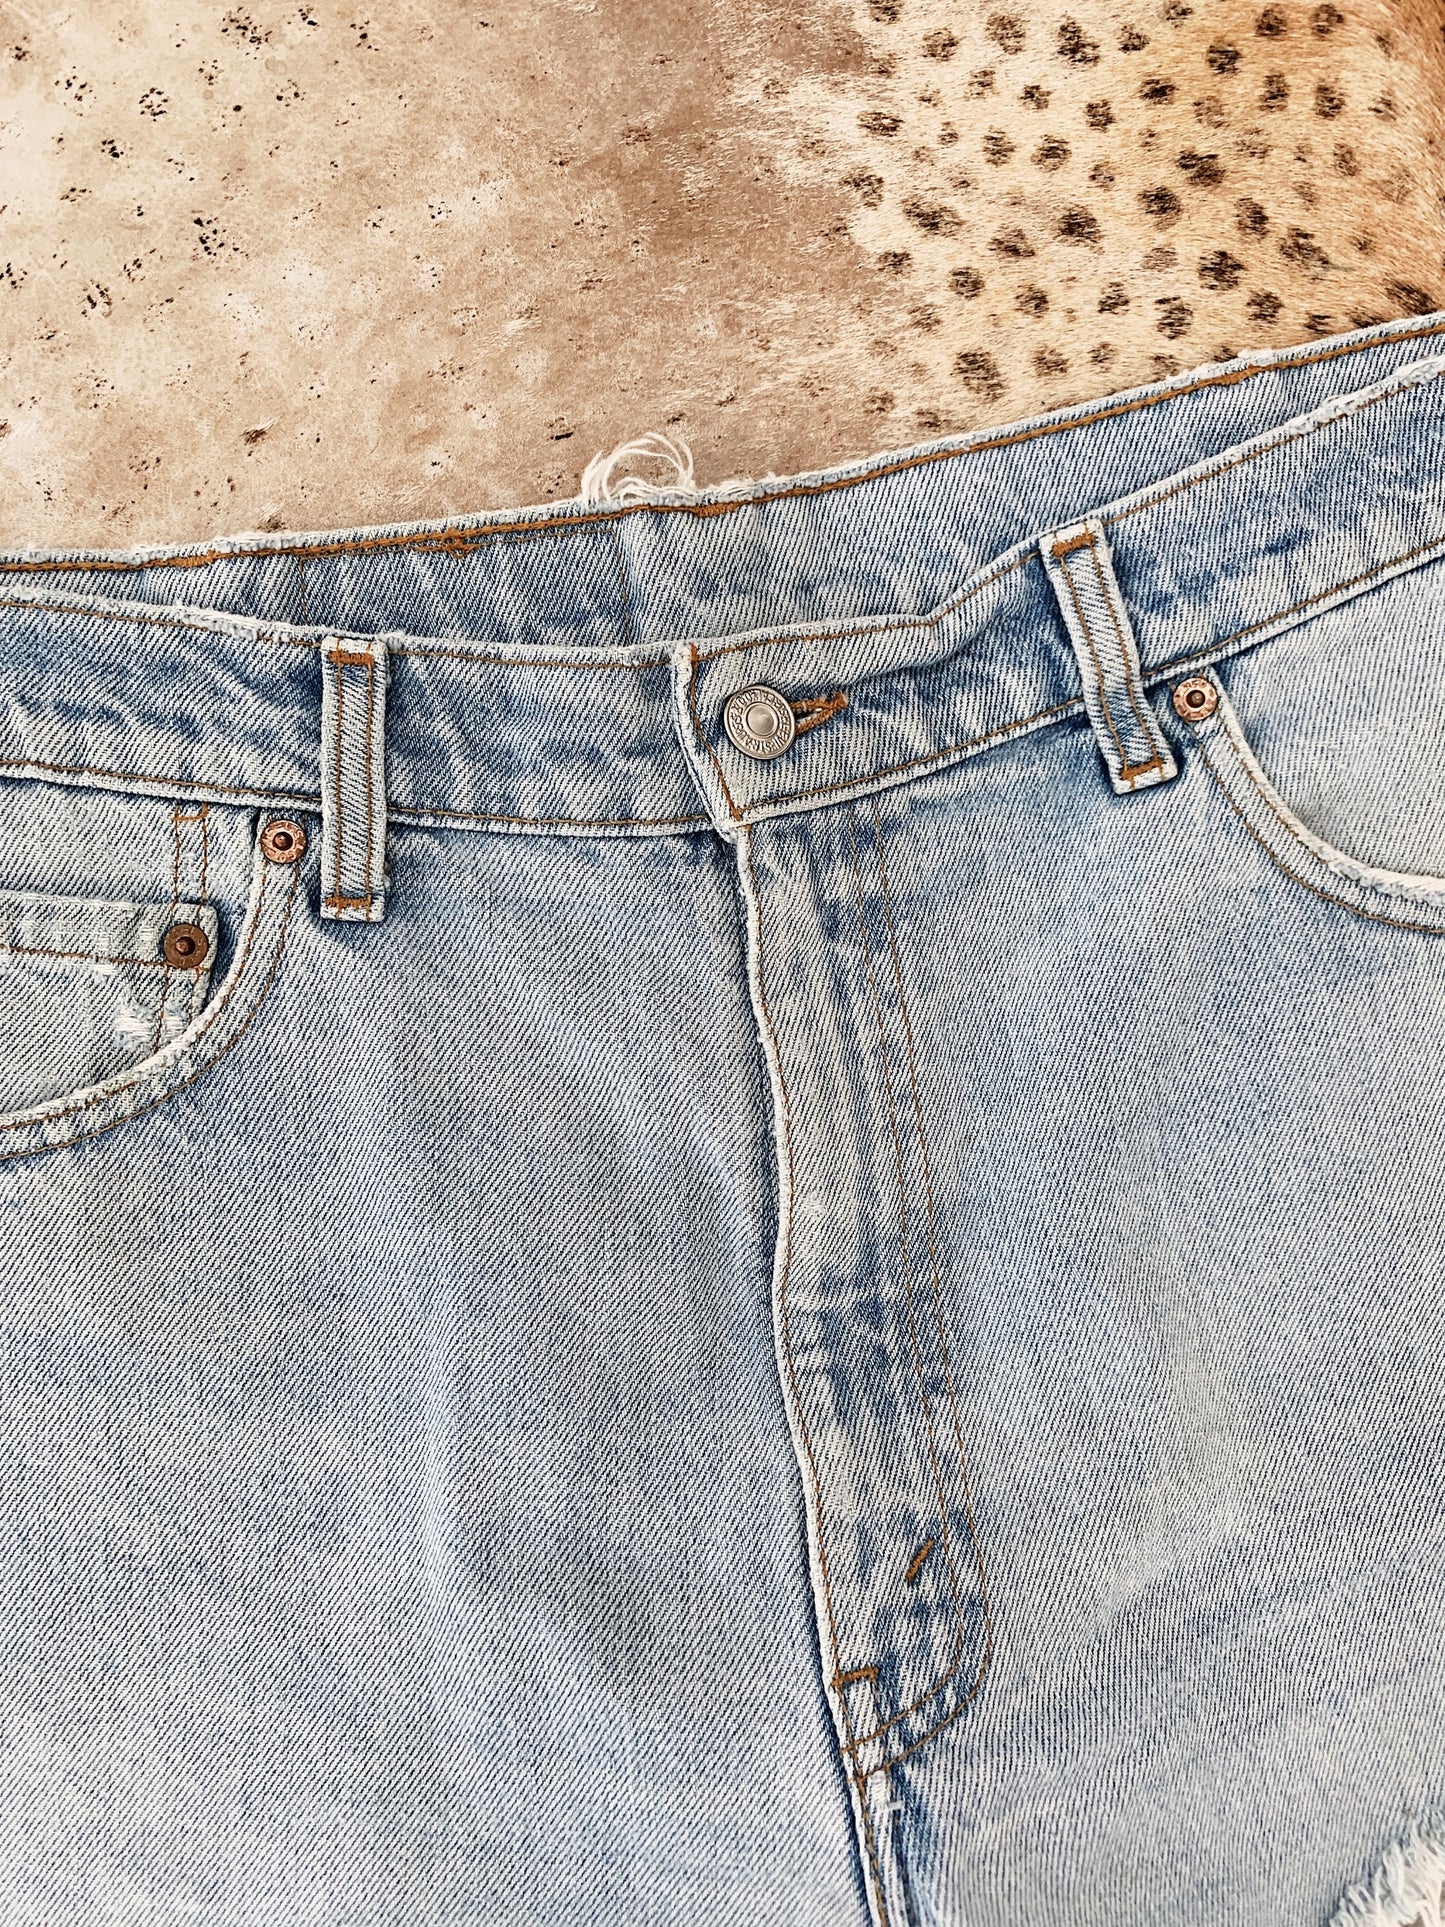 Vintage Levi's High W Re-cut Denim Shorts / Size 36